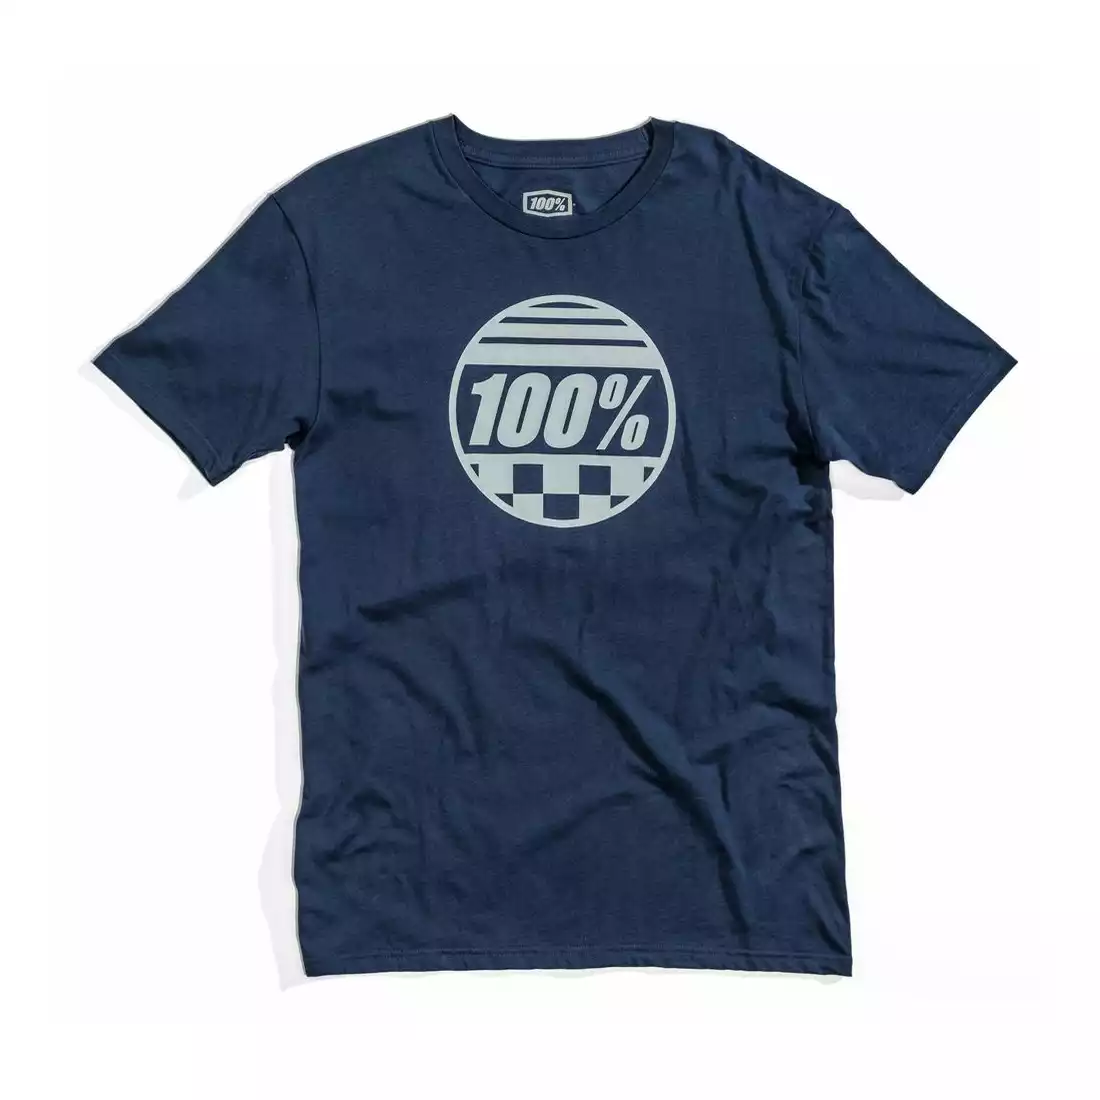 T-shirt 100% SECTOR krótki rękaw slate blue roz. XL (NEW) STO-32108-182-13